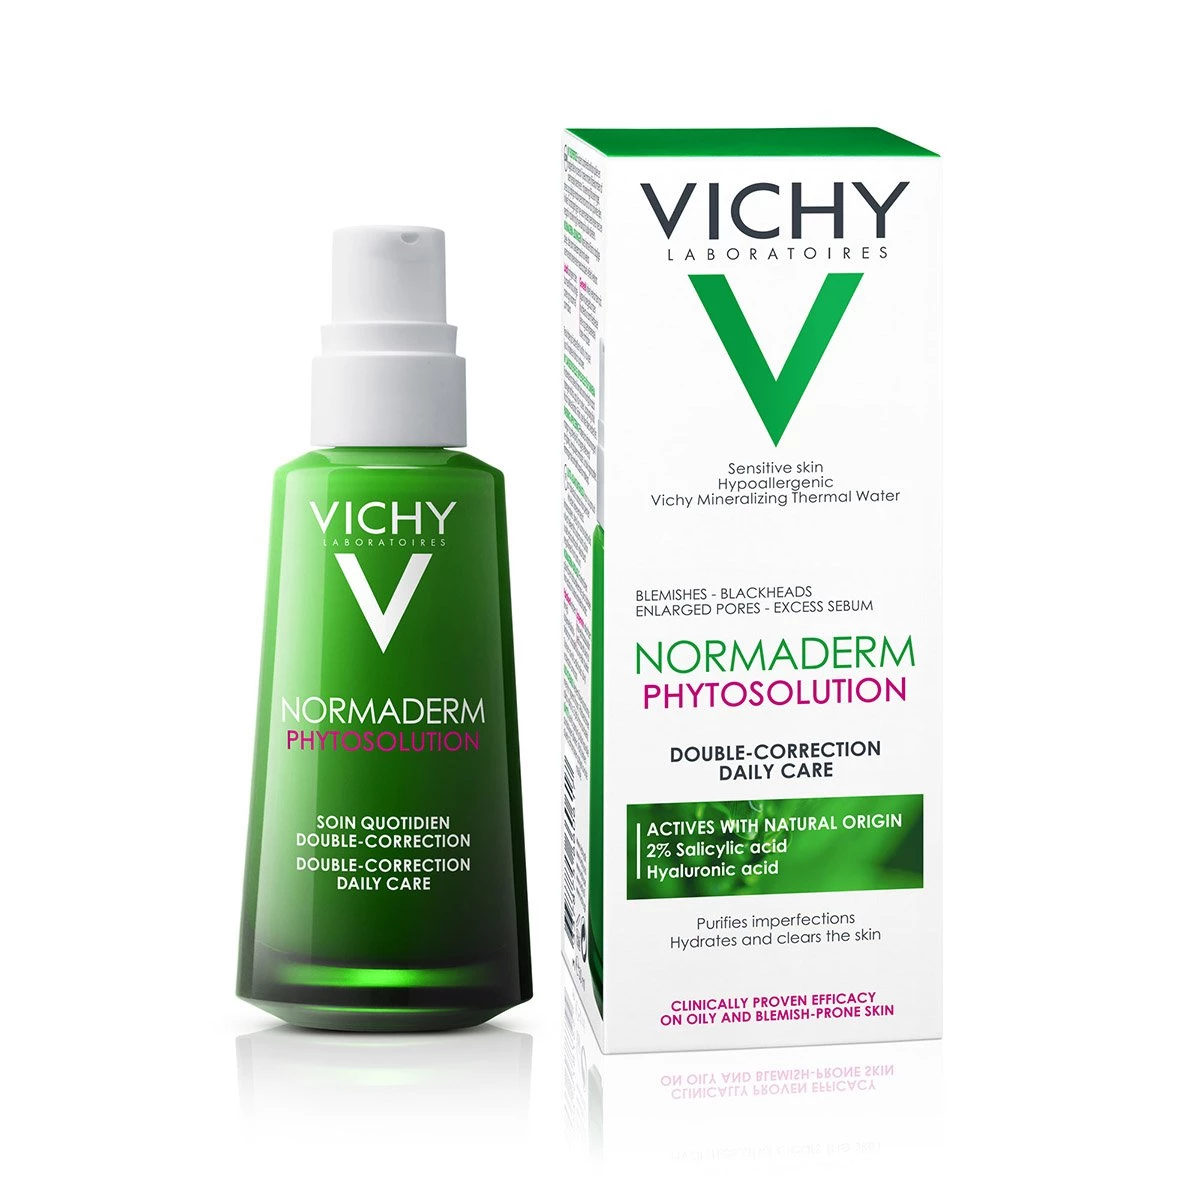 Kem dưỡng Vichy Normaderm Phytosolution dạng gel dành cho da mụn